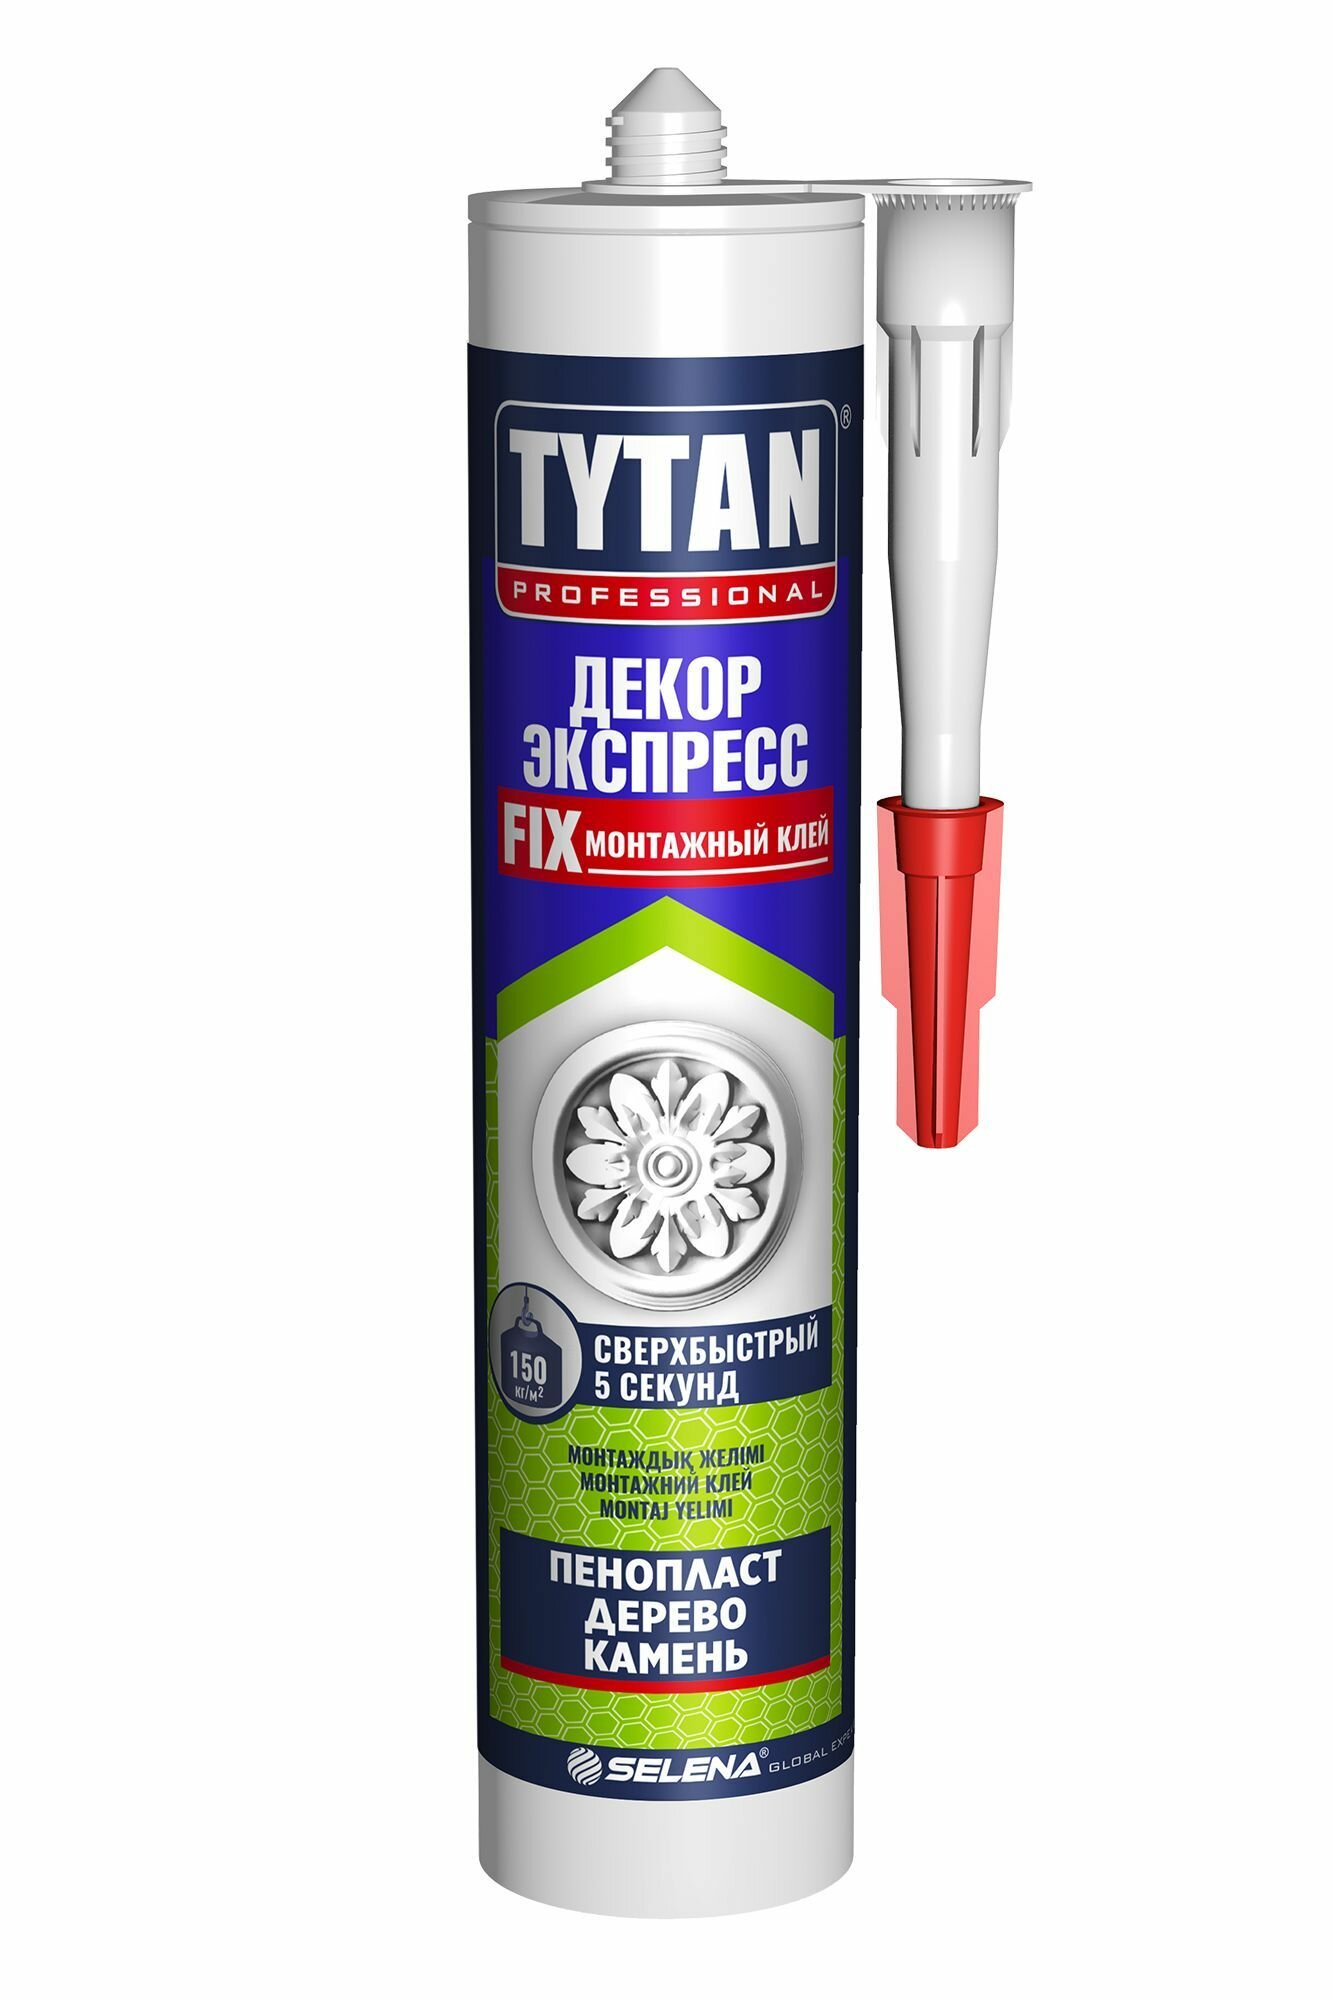 Монтажный клей Tytan Professional Декор Экспресс (пенопласт, дерево, камень) супер-белый 310мл